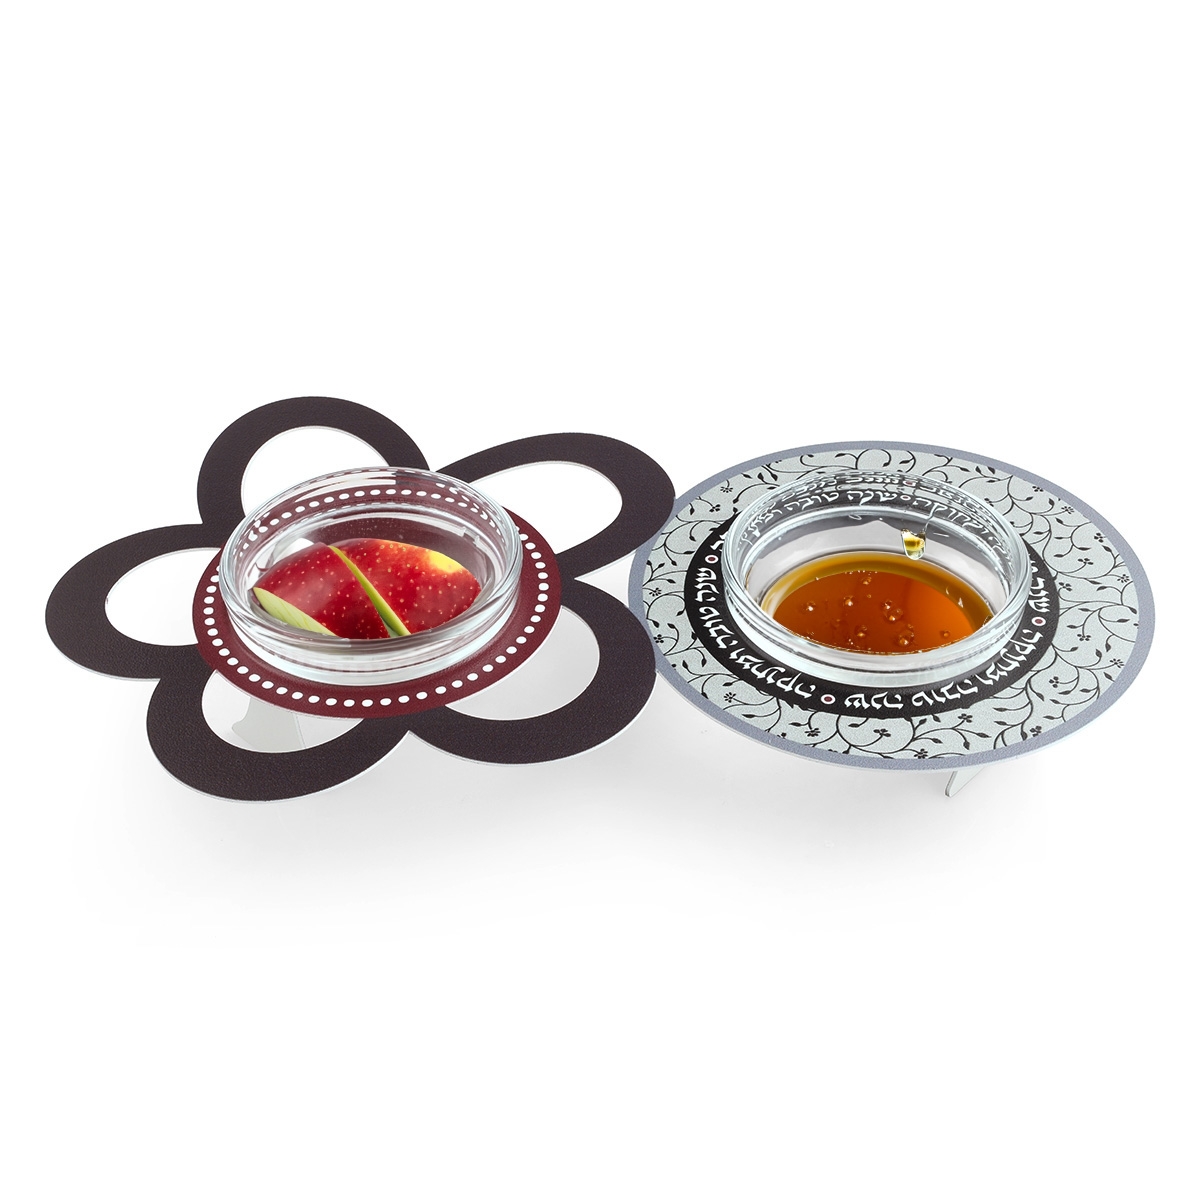 Dorit Judaica Rosh Hashanah Apples & Honey Dish Set  - 1